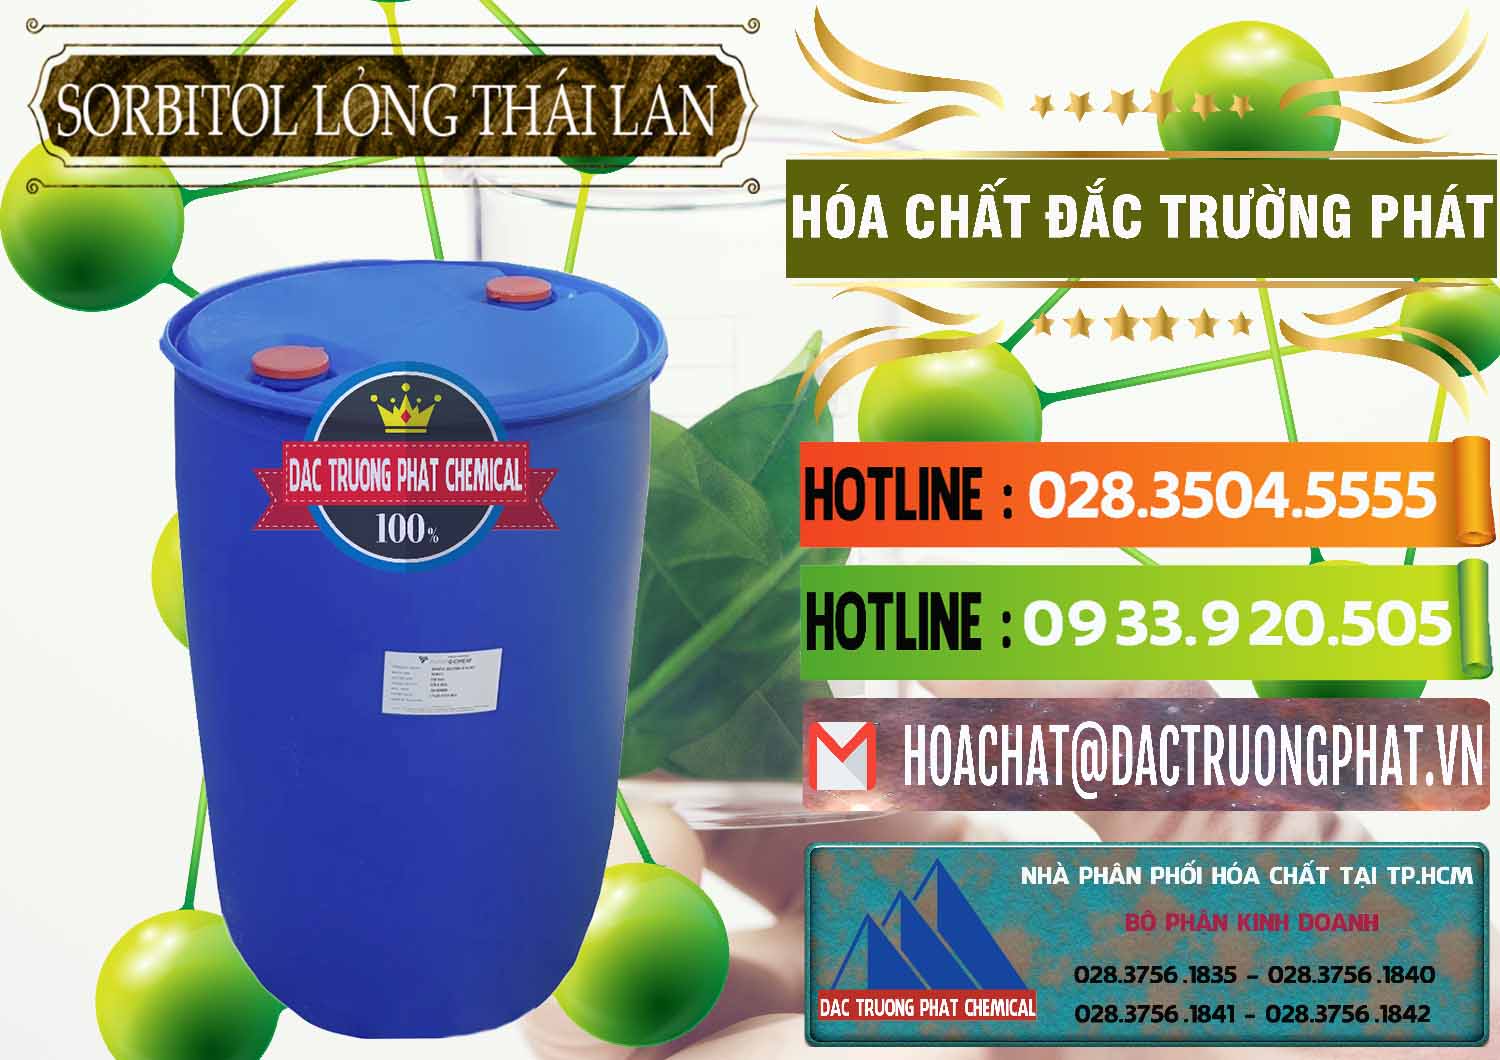 Cty chuyên bán _ phân phối Sorbitol - C6H14O6 Lỏng 70% Food Grade Thái Lan Thailand - 0341 - Nơi chuyên cung cấp & kinh doanh hóa chất tại TP.HCM - cungcaphoachat.com.vn